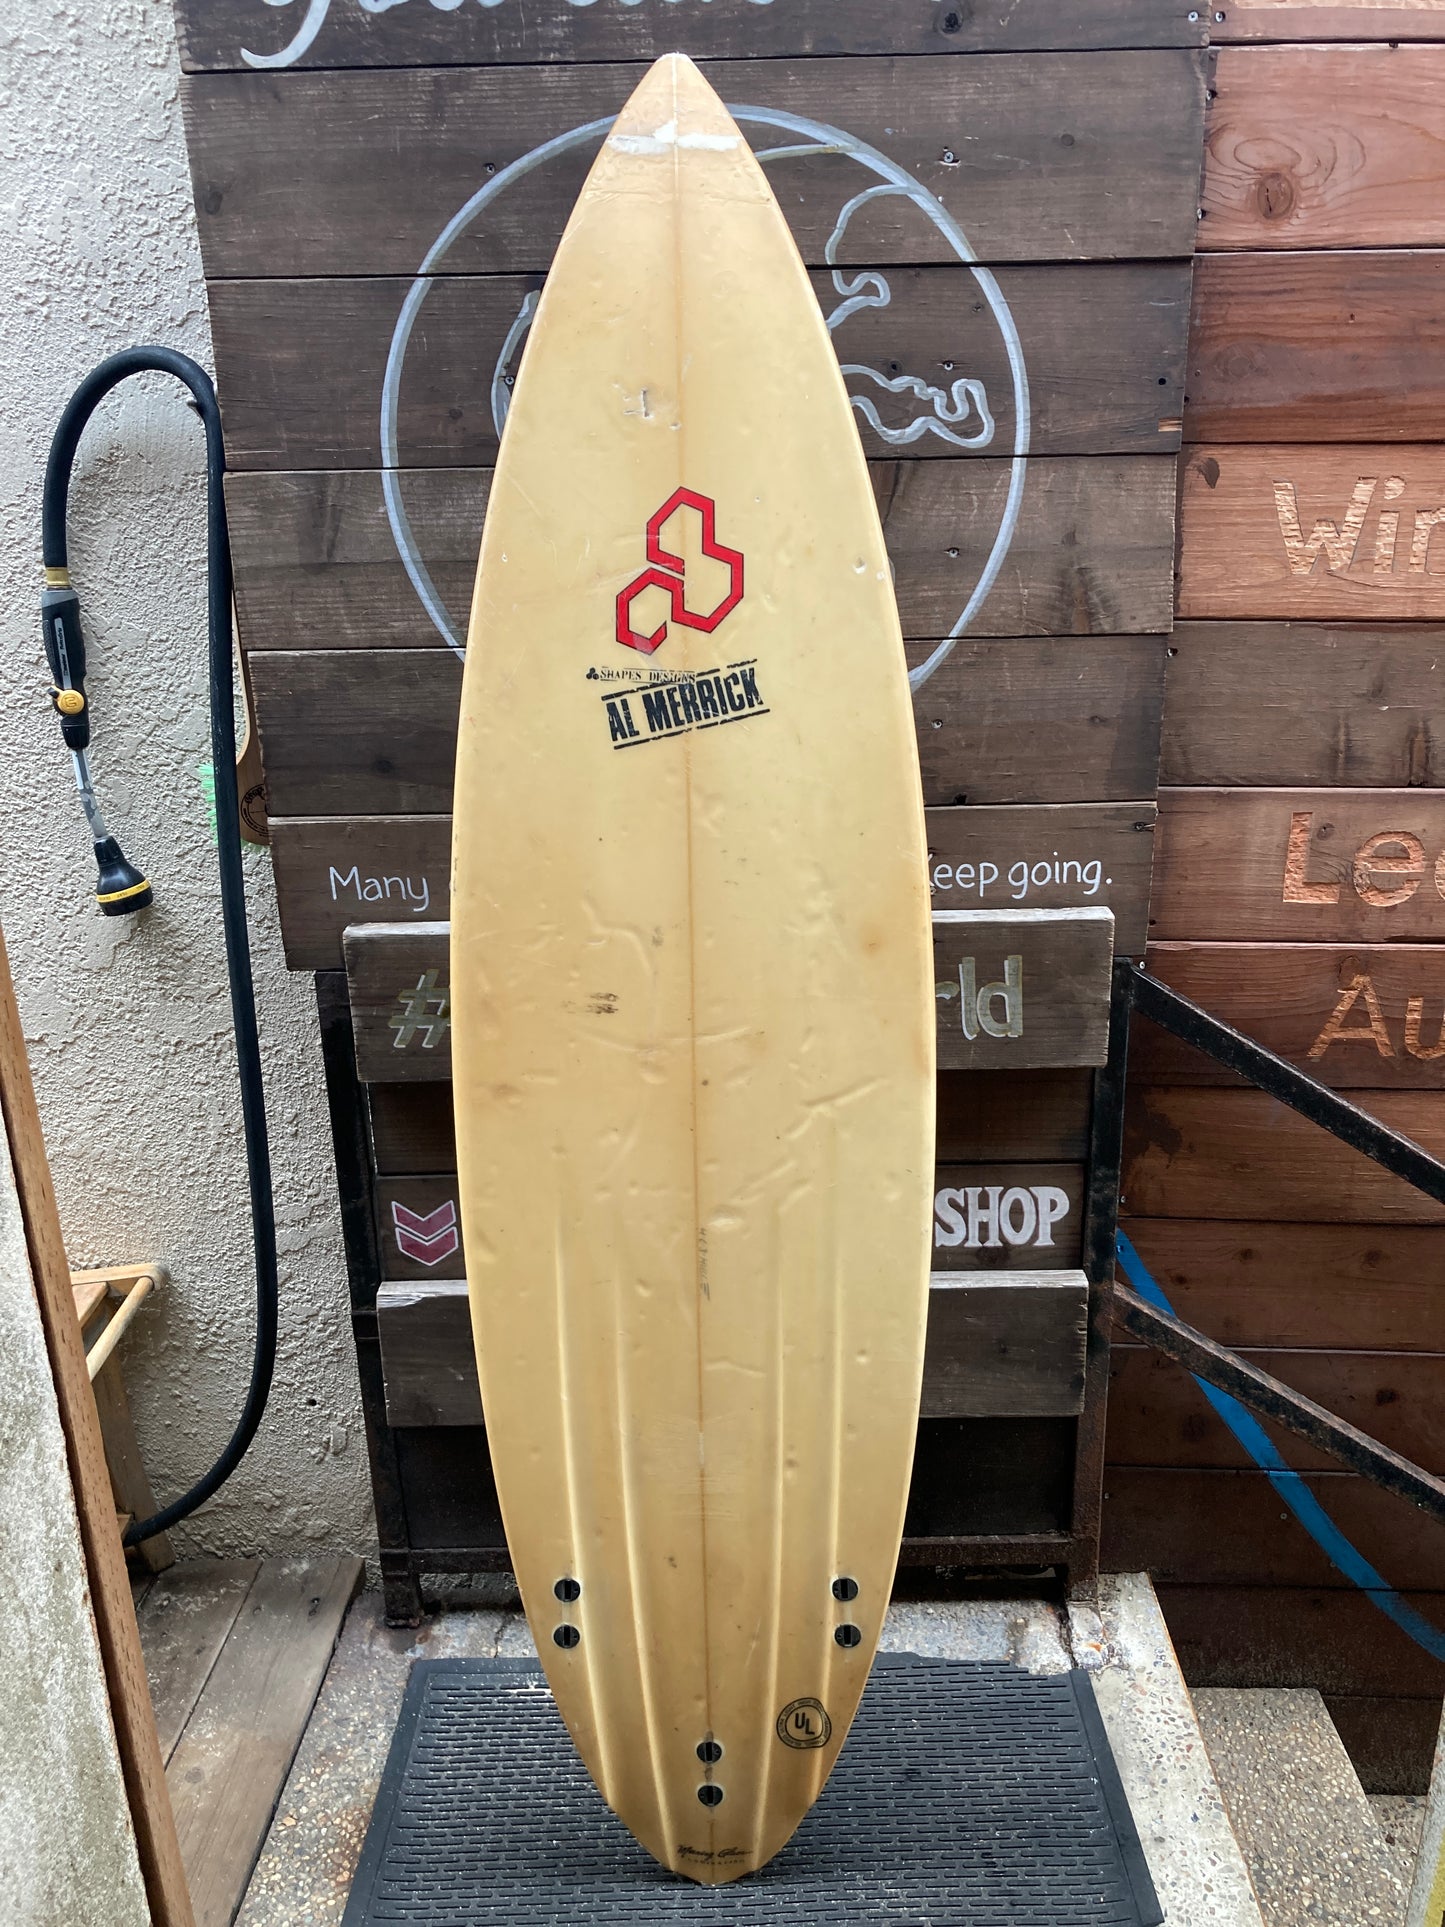 USED: AL Merrick Thruster Preformance Surfboard